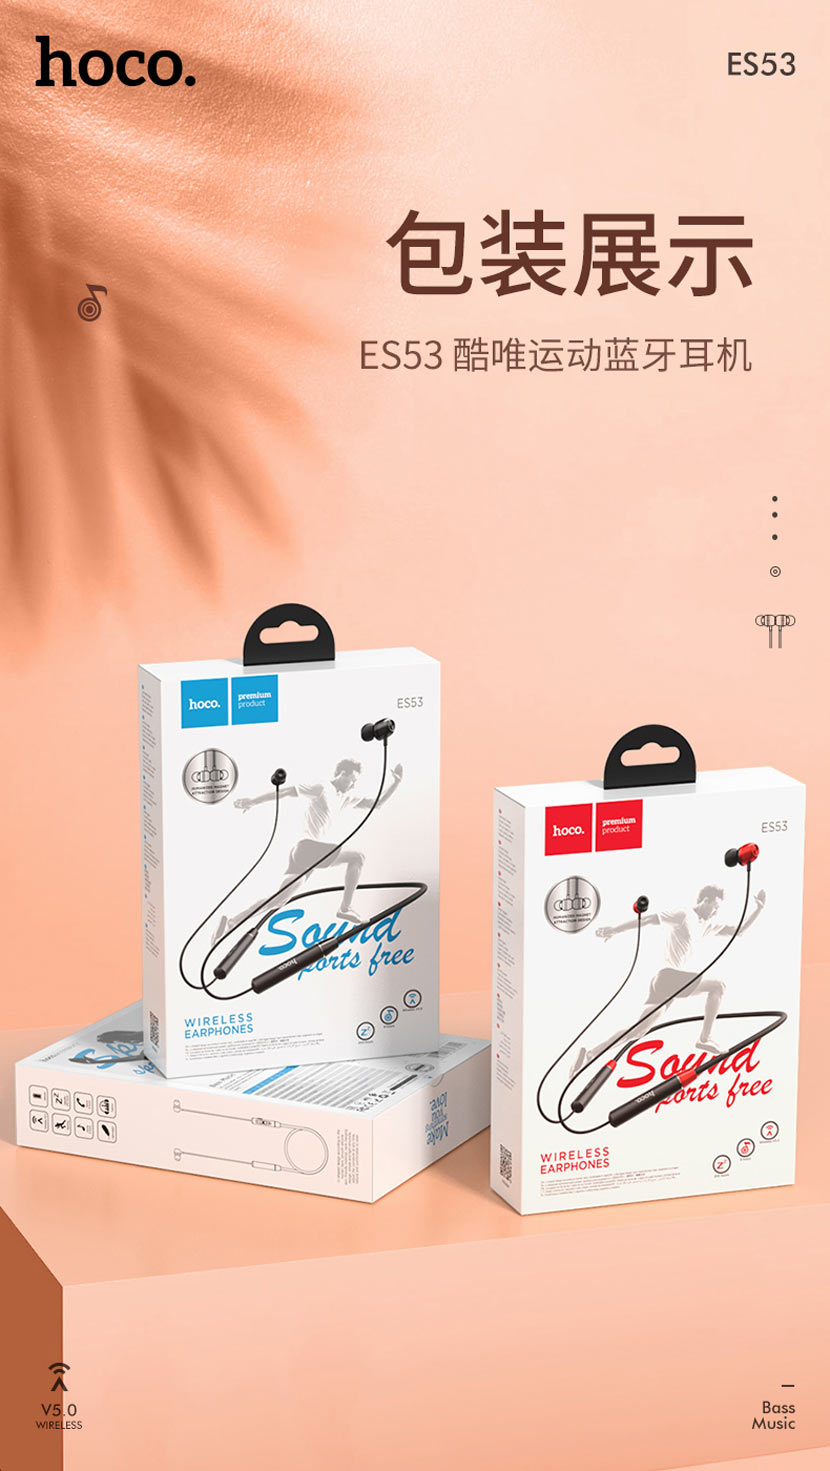 hoco news es53 coolway sports bt earphones package cn